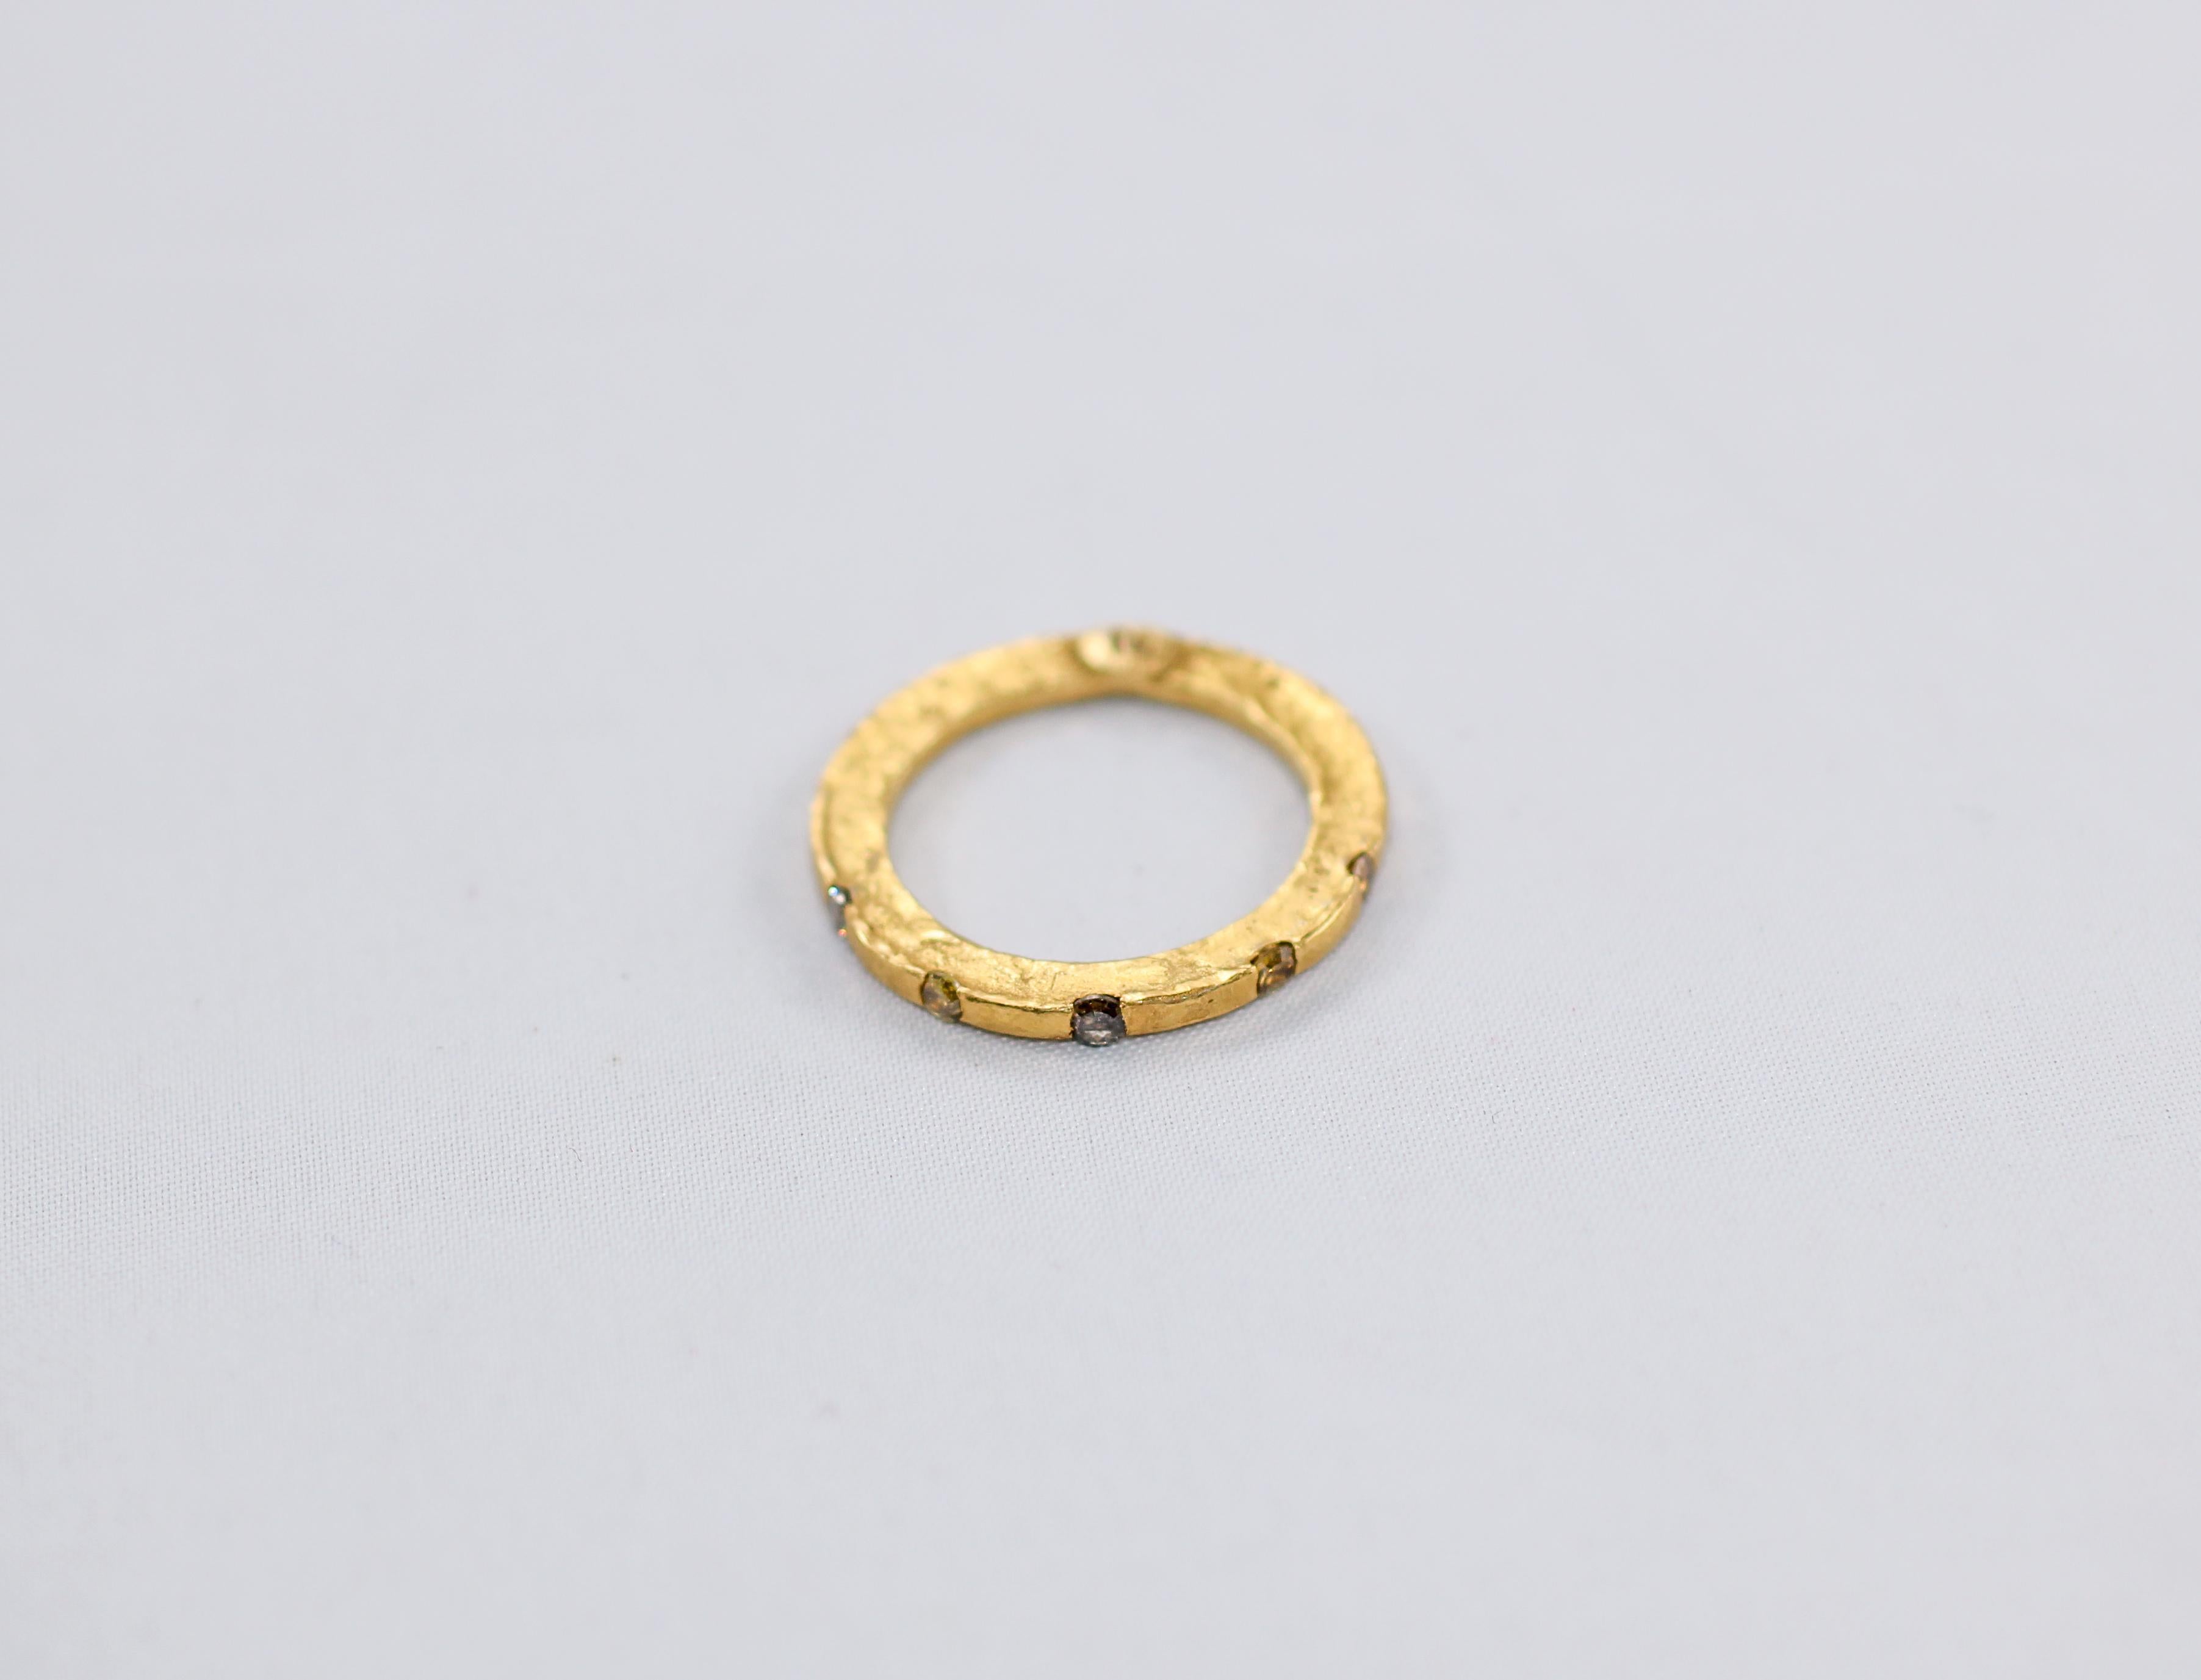 Ein Eheringstapel, der Ringe aus 18- und 22-karätigem recyceltem Gold mit braunen und gelben Diamanten und rosa Saphiren kombiniert. Alternative Hochzeits- oder Verlobungsringe für die Braut. Simplicity Stack #6 modern design- 

Diese auffälligen